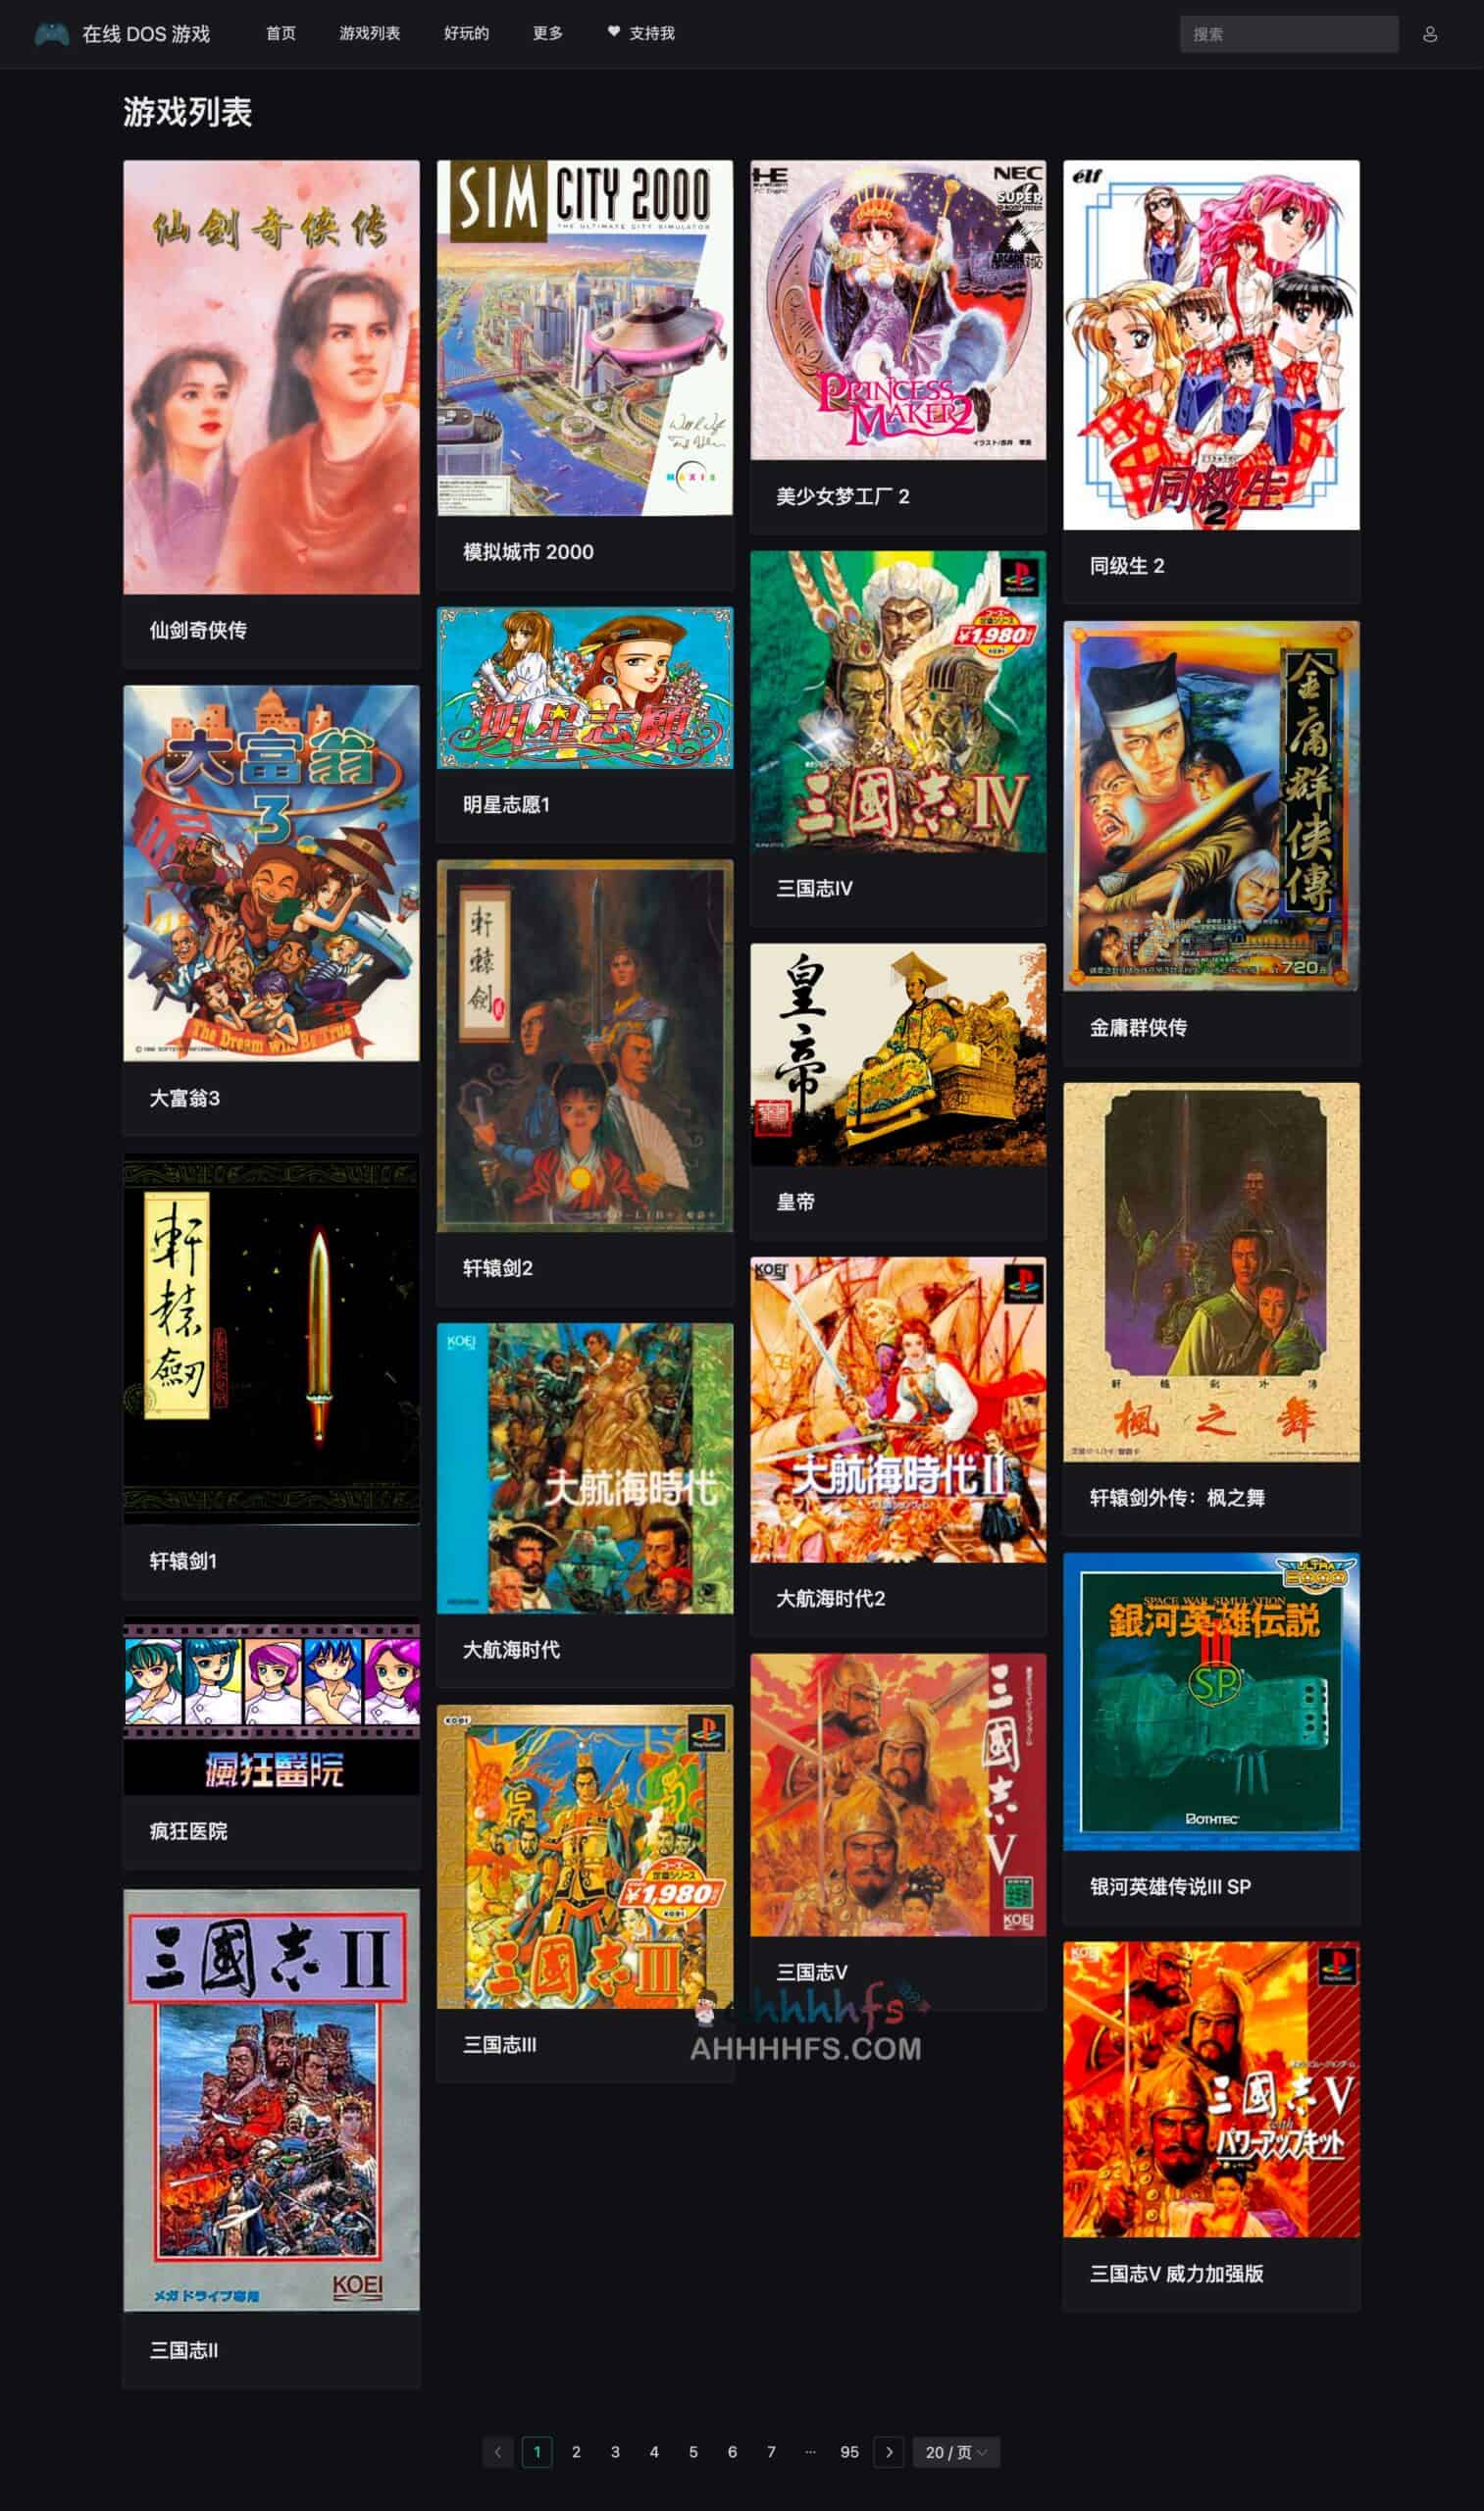 在线DOS 游戏集合-Chinese DOS games collections